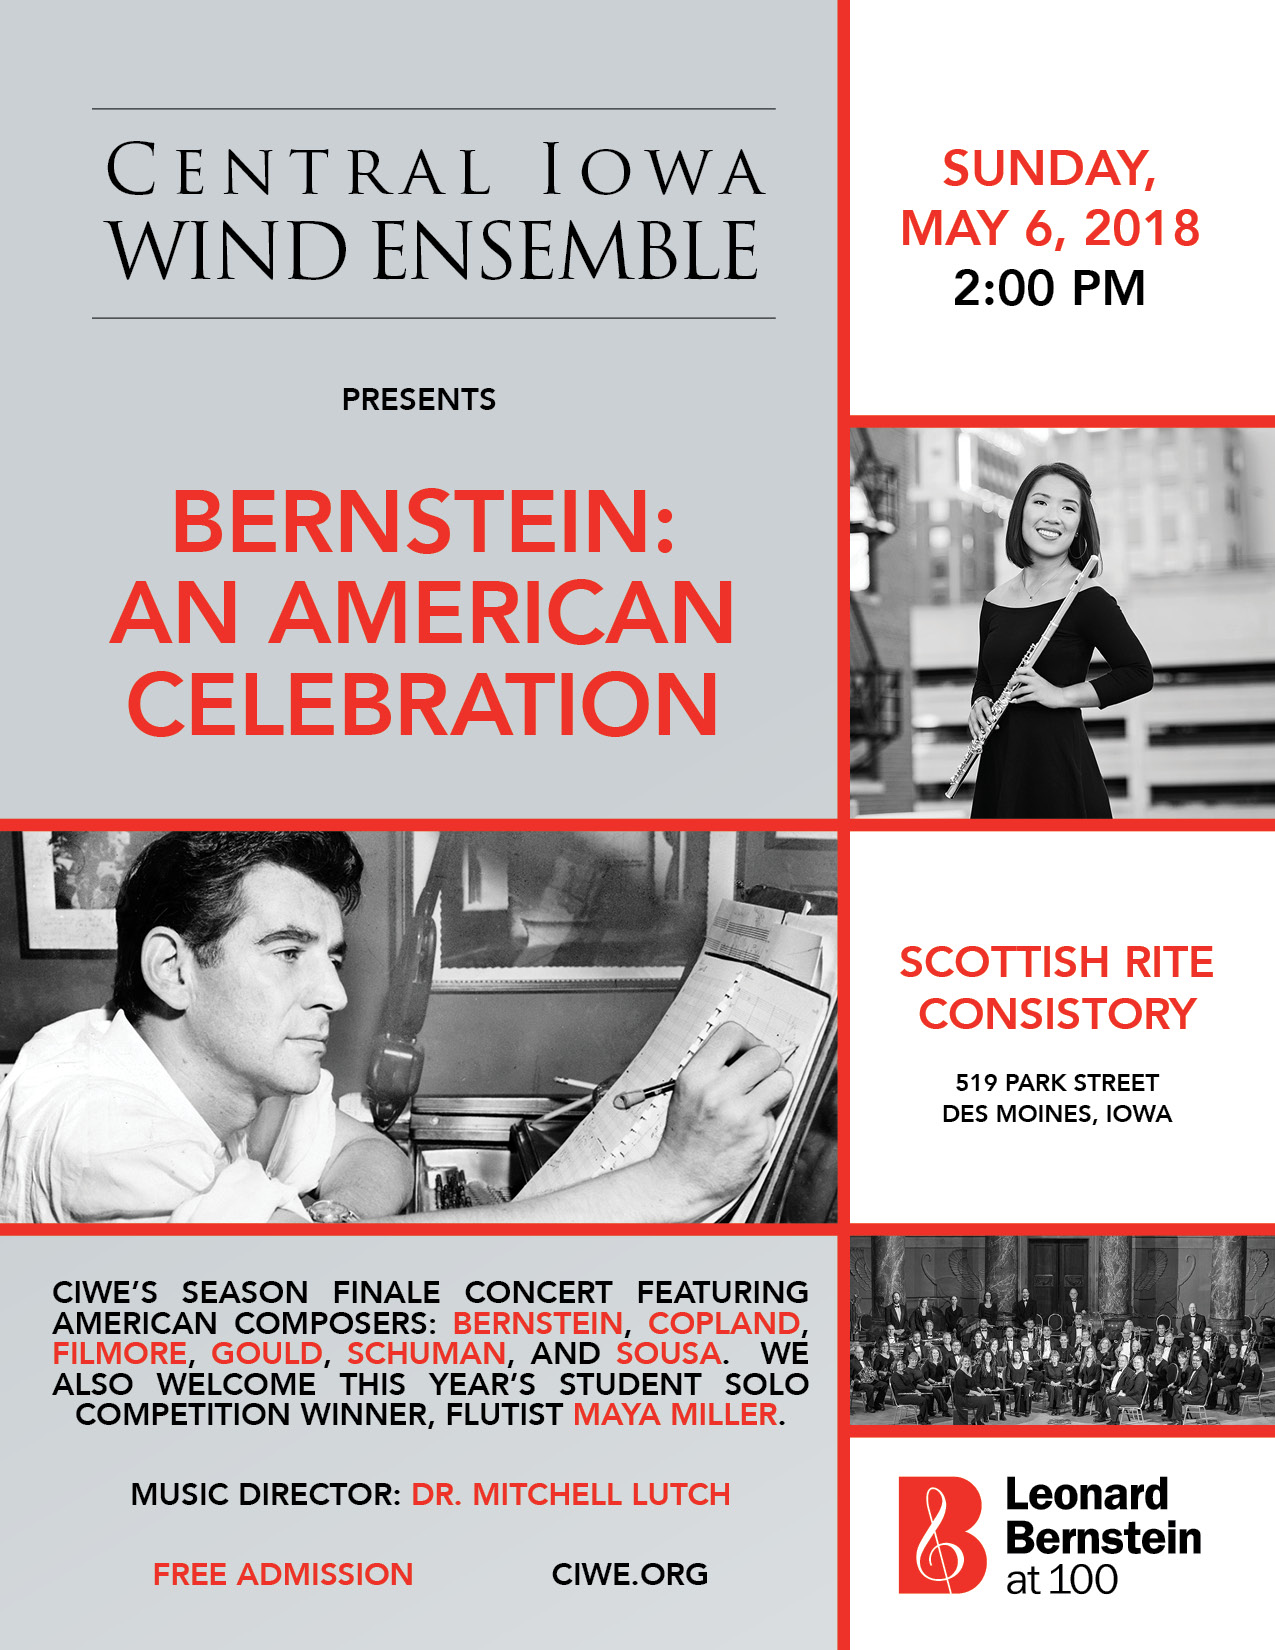 Central Iowa Wind Ensemble presents Bernstein